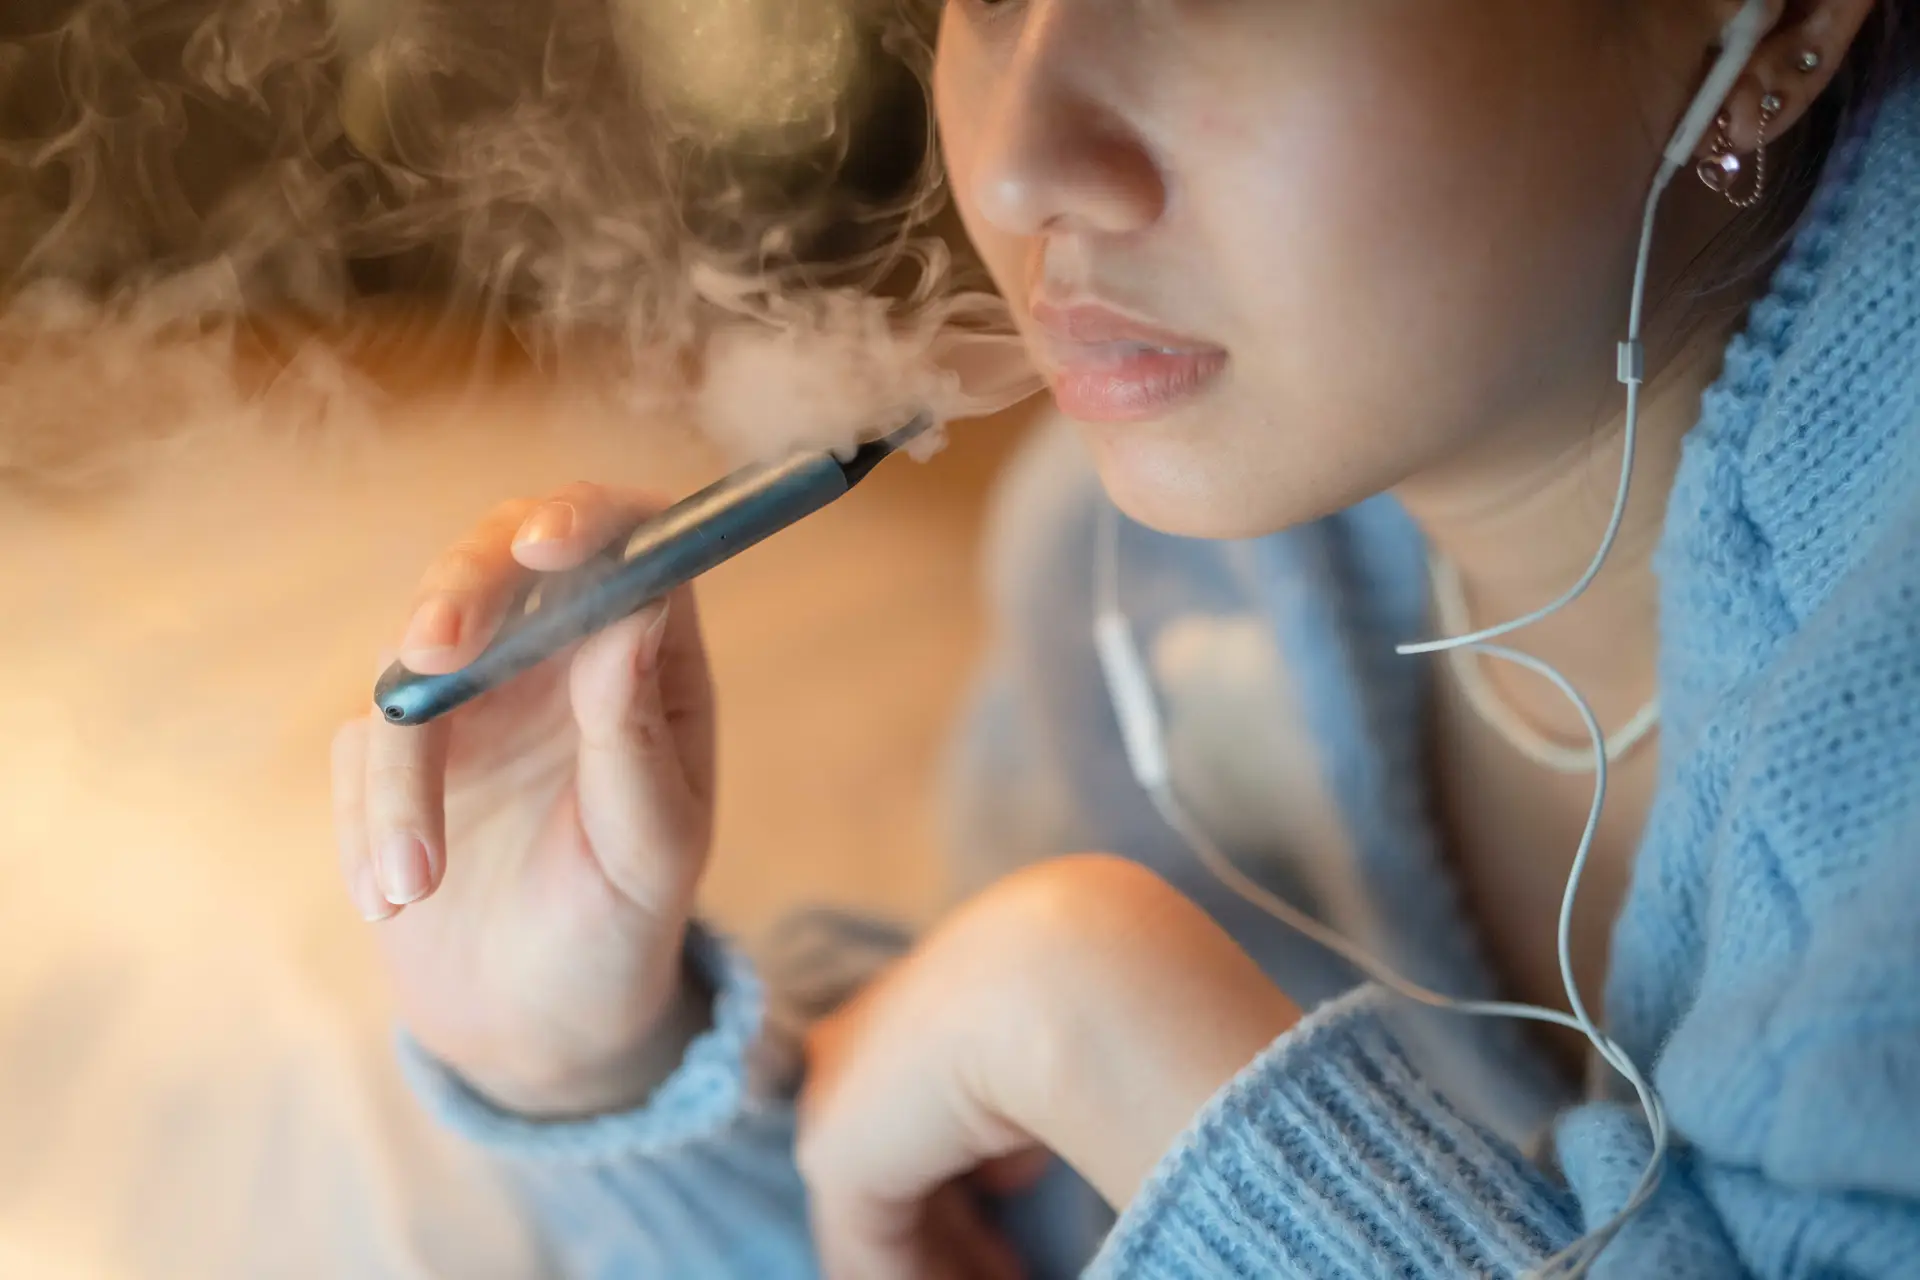 Reino Unido distribui cigarros eletrónicos a fumadores: país está isolado na decisão "arriscadíssima" que “afronta a saúde pública”